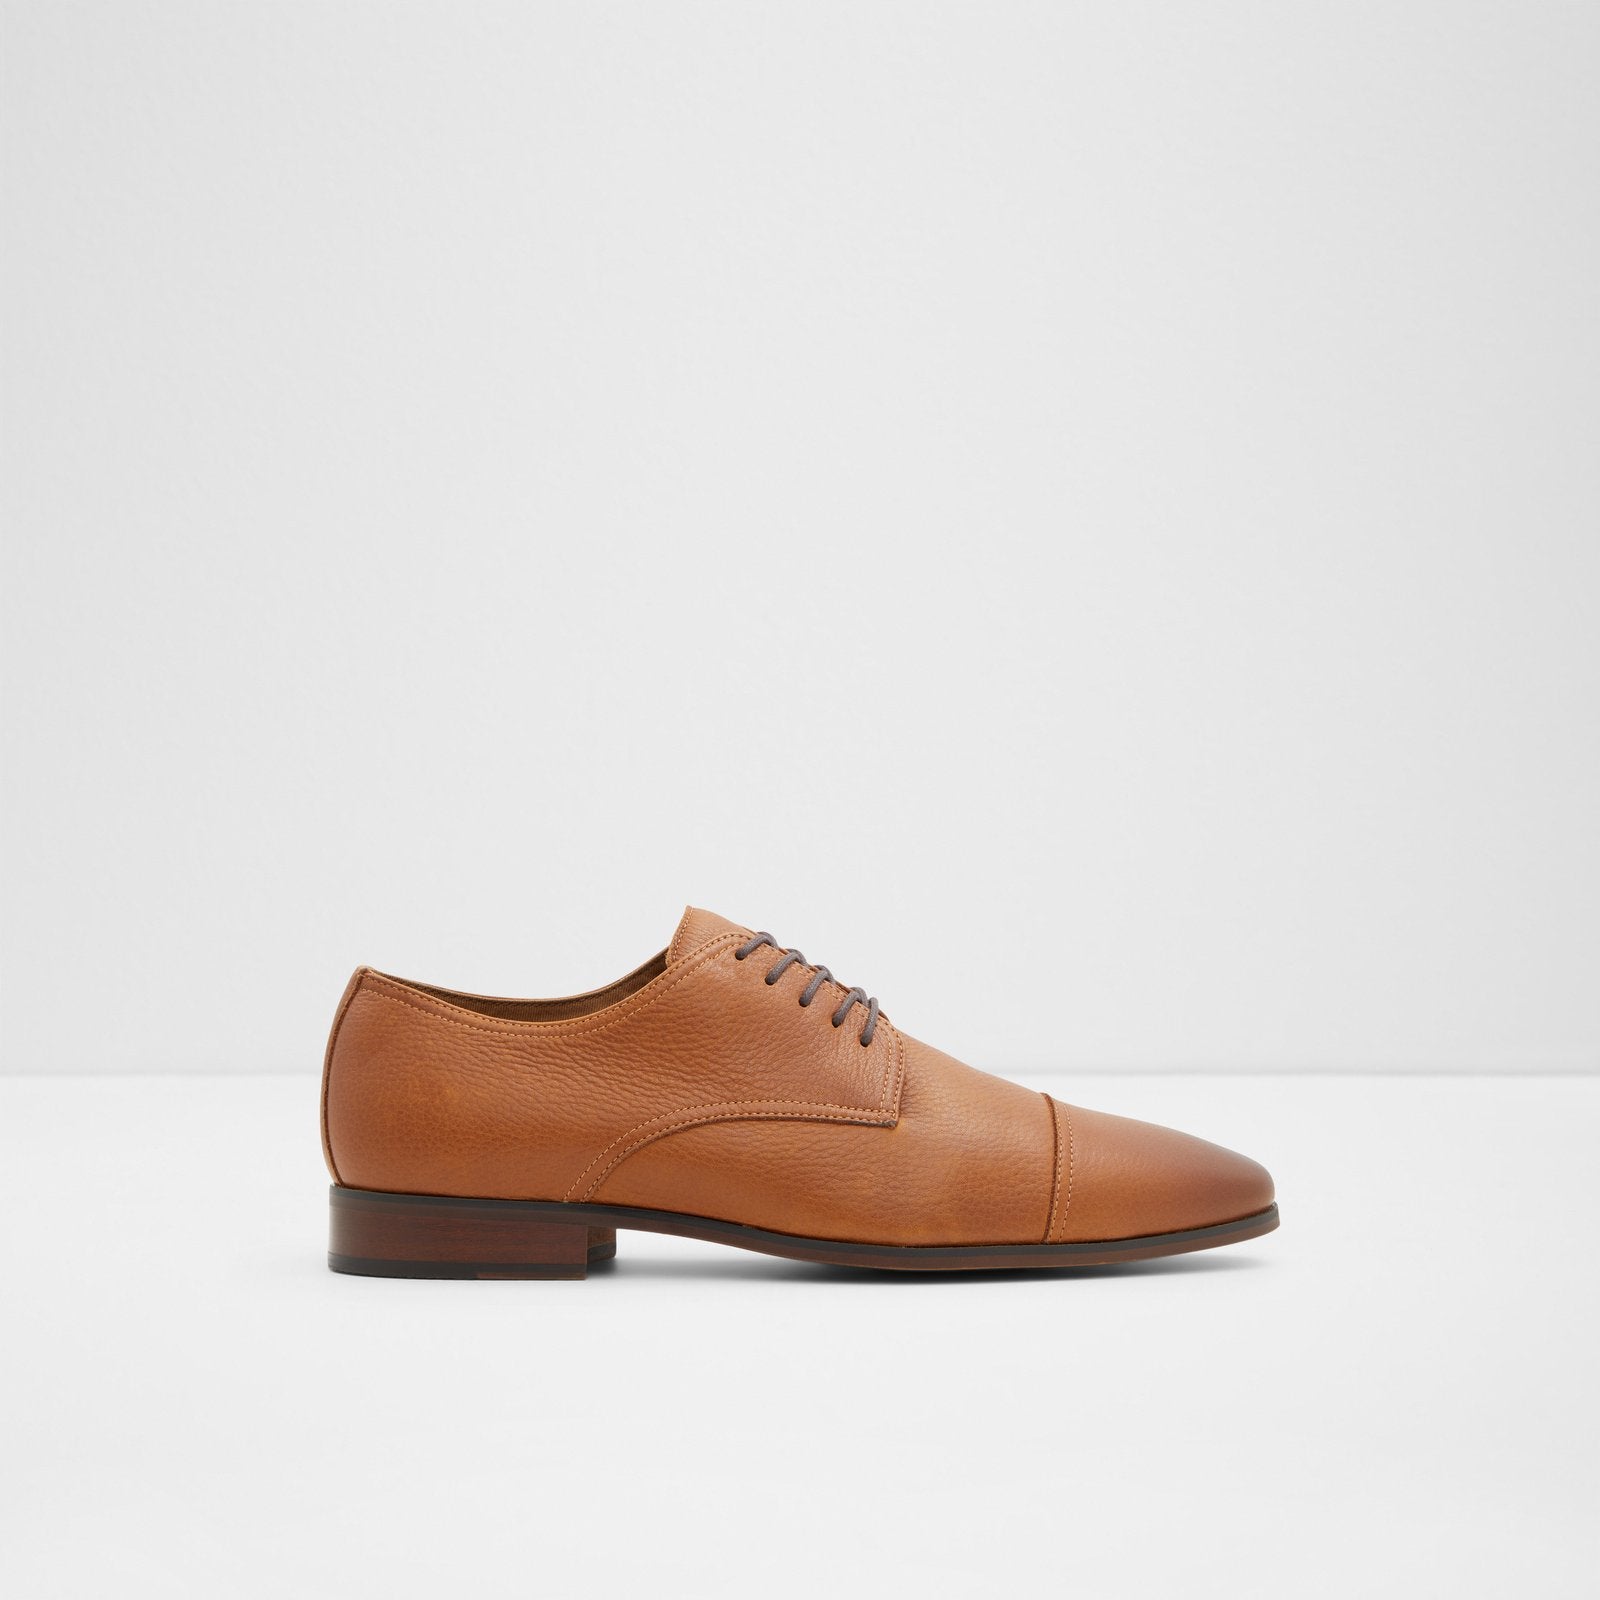 Aldo Men’s Lace Up Shoes Cuciroflex (Cognac)